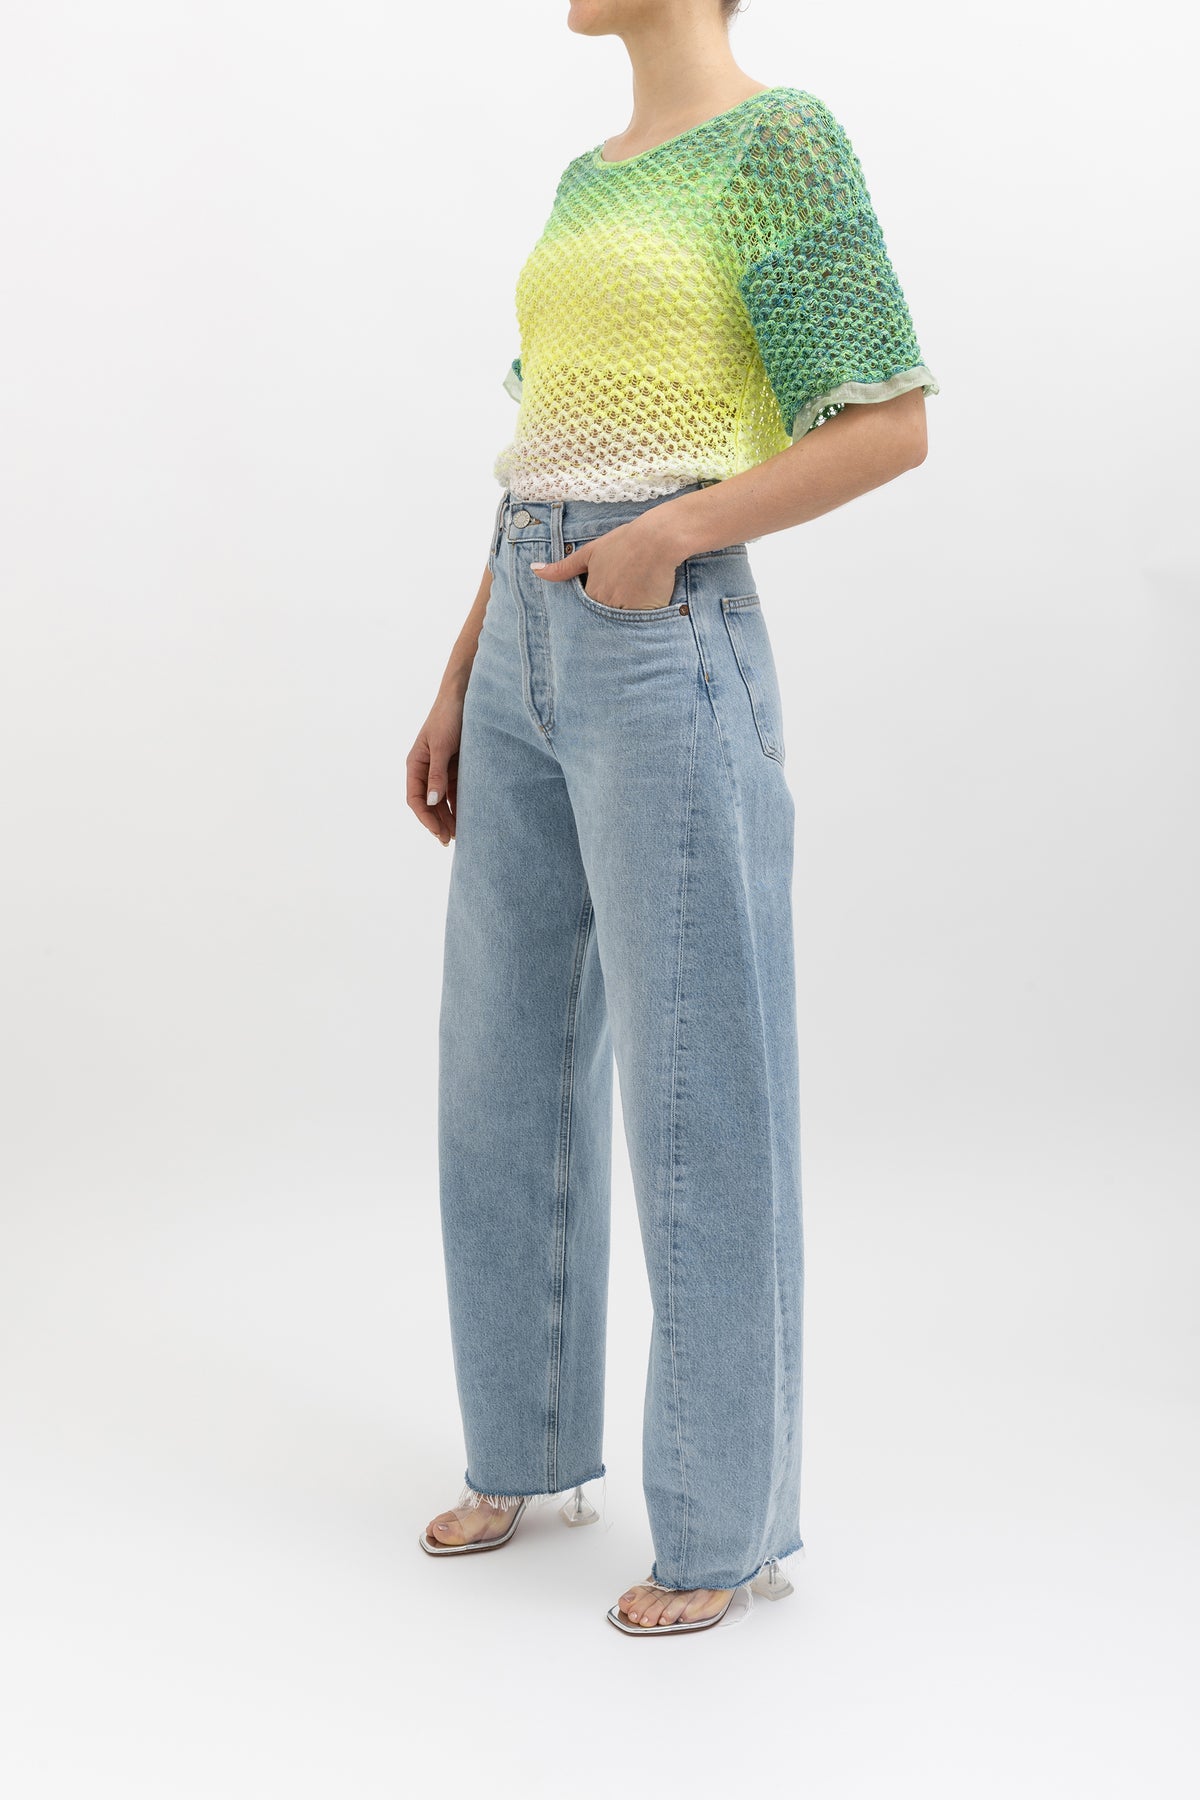 Crochet Knit T-Shirt